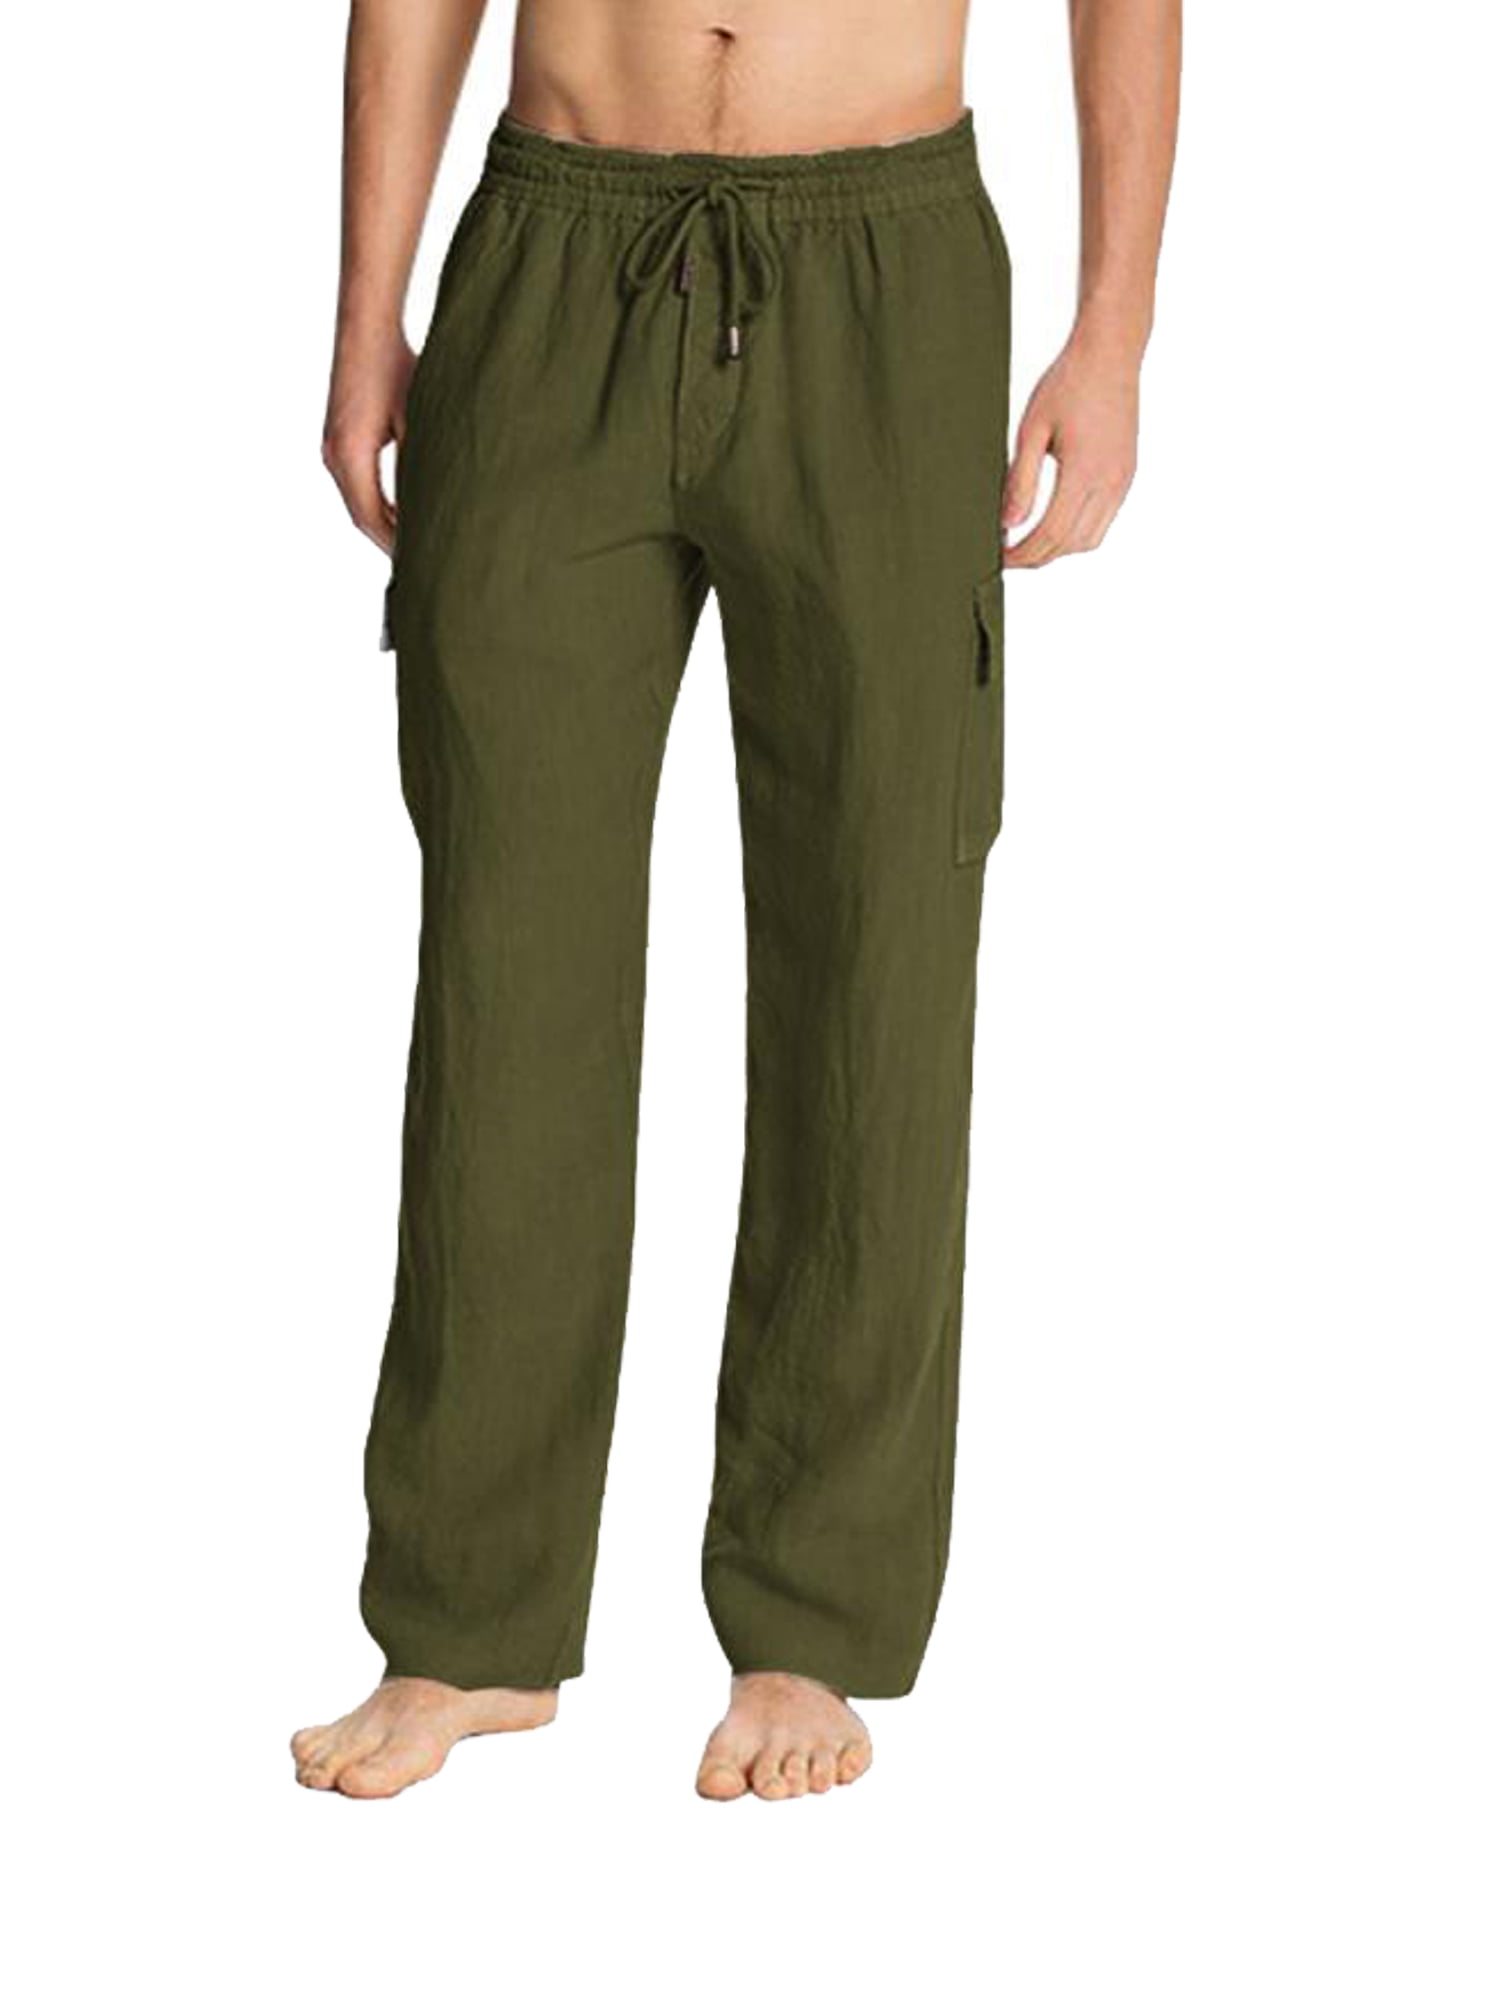 Men’s Linen Drawstring Casual Beach Pants-Lightweight Summer Trousers ...